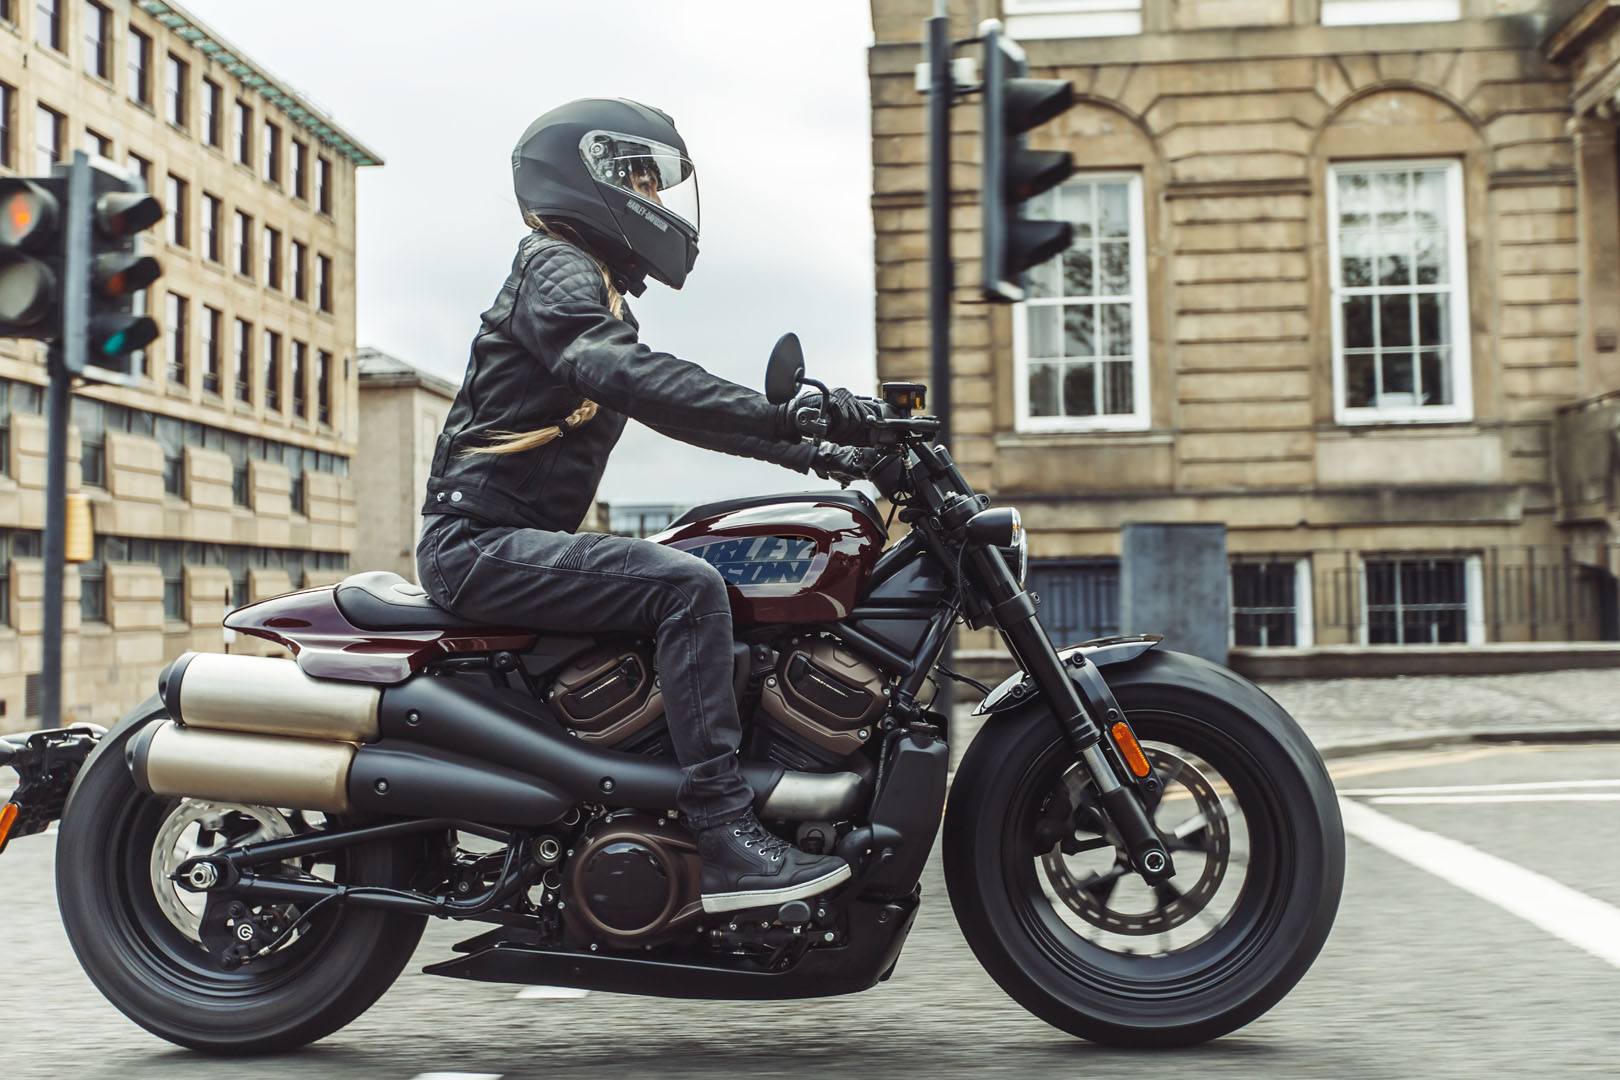 2021 Harley-Davidson Sportster® S in Leominster, Massachusetts - Photo 16